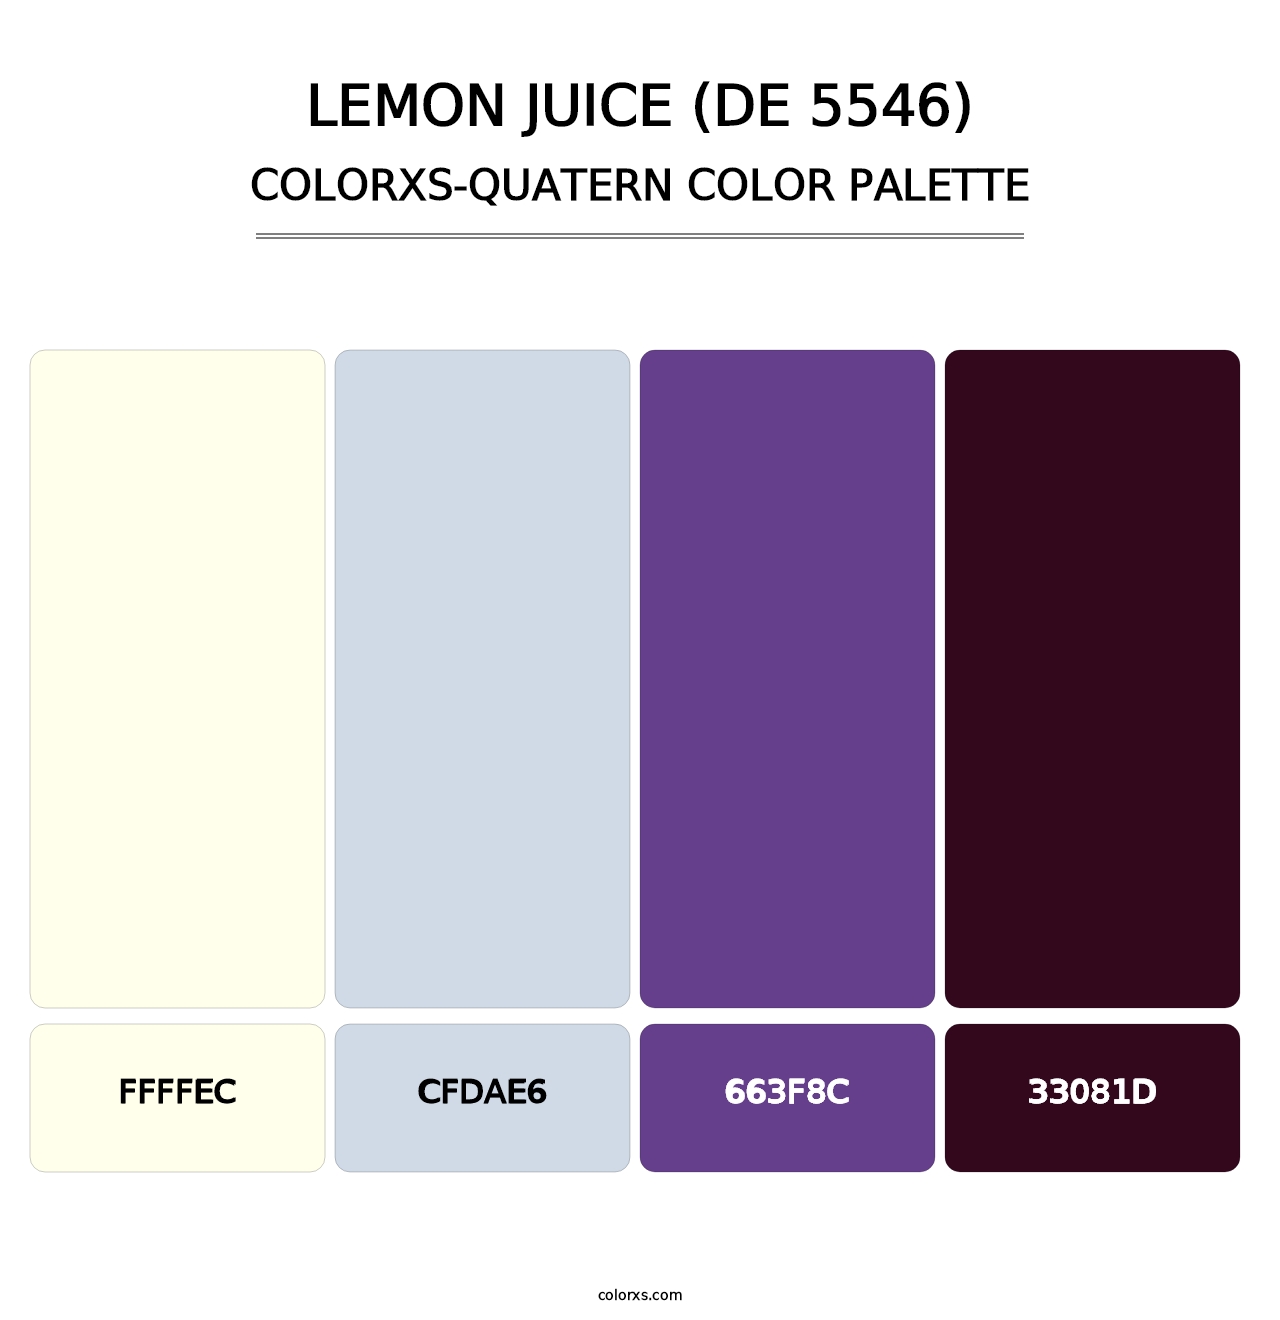 Lemon Juice (DE 5546) - Colorxs Quatern Palette